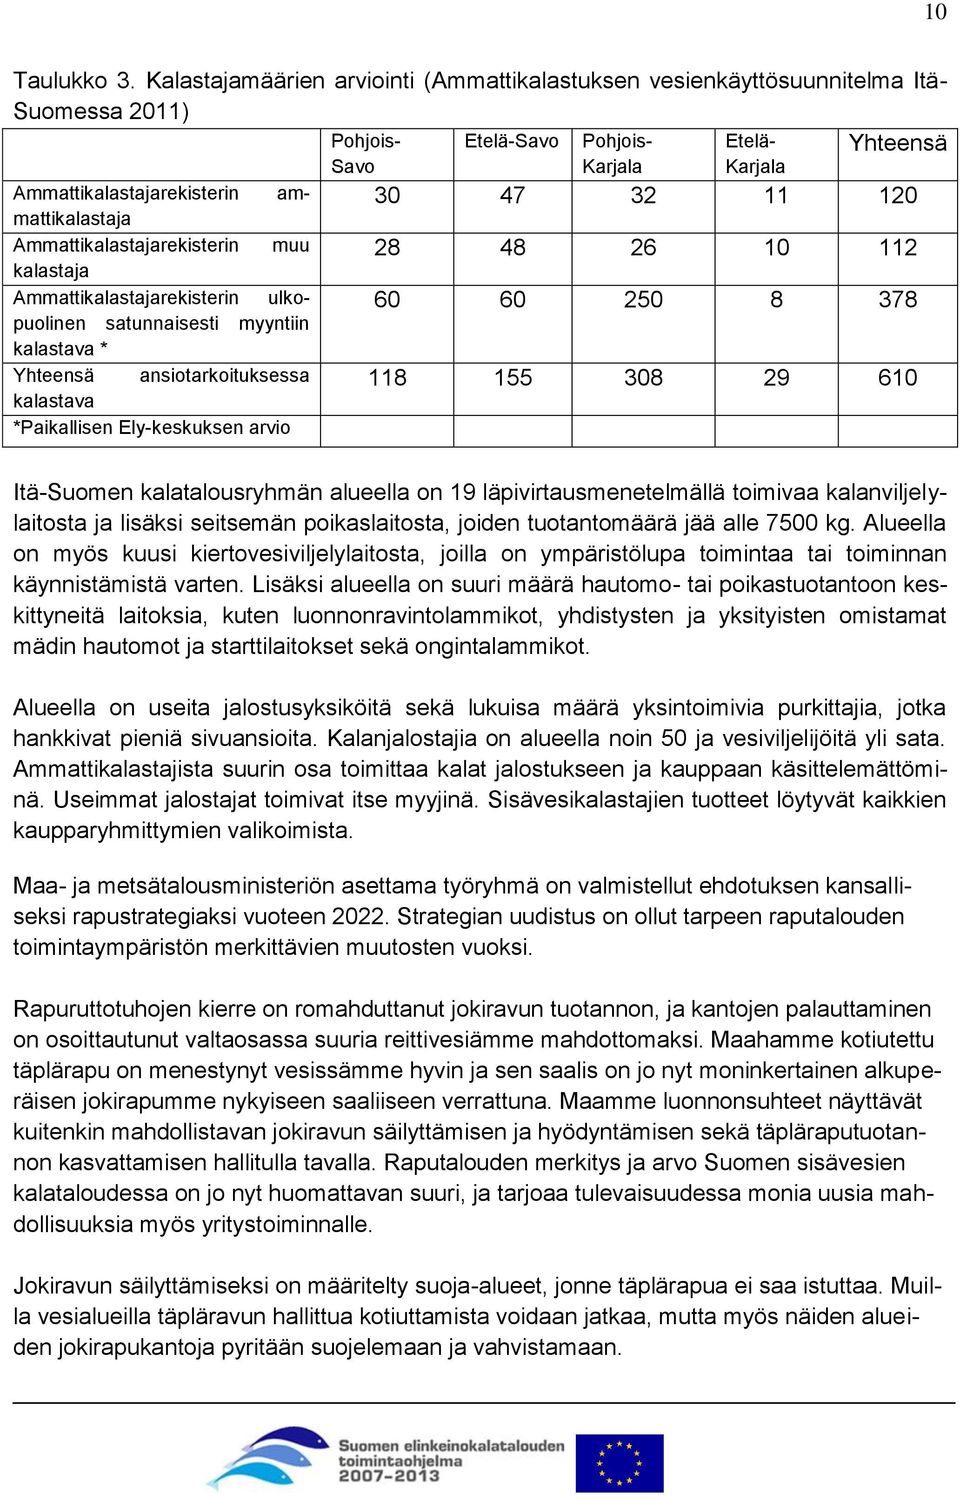 Kalastajamäärien arviointi (Ammattikalastuksen vesienkäyttösuunnitelma Itä- Suomessa 2011) Etelä-Savo Yhteensä Pohjois- Savo Pohjois- Karjala Etelä- Karjala 30 47 32 11 120 28 48 26 10 112 60 60 250